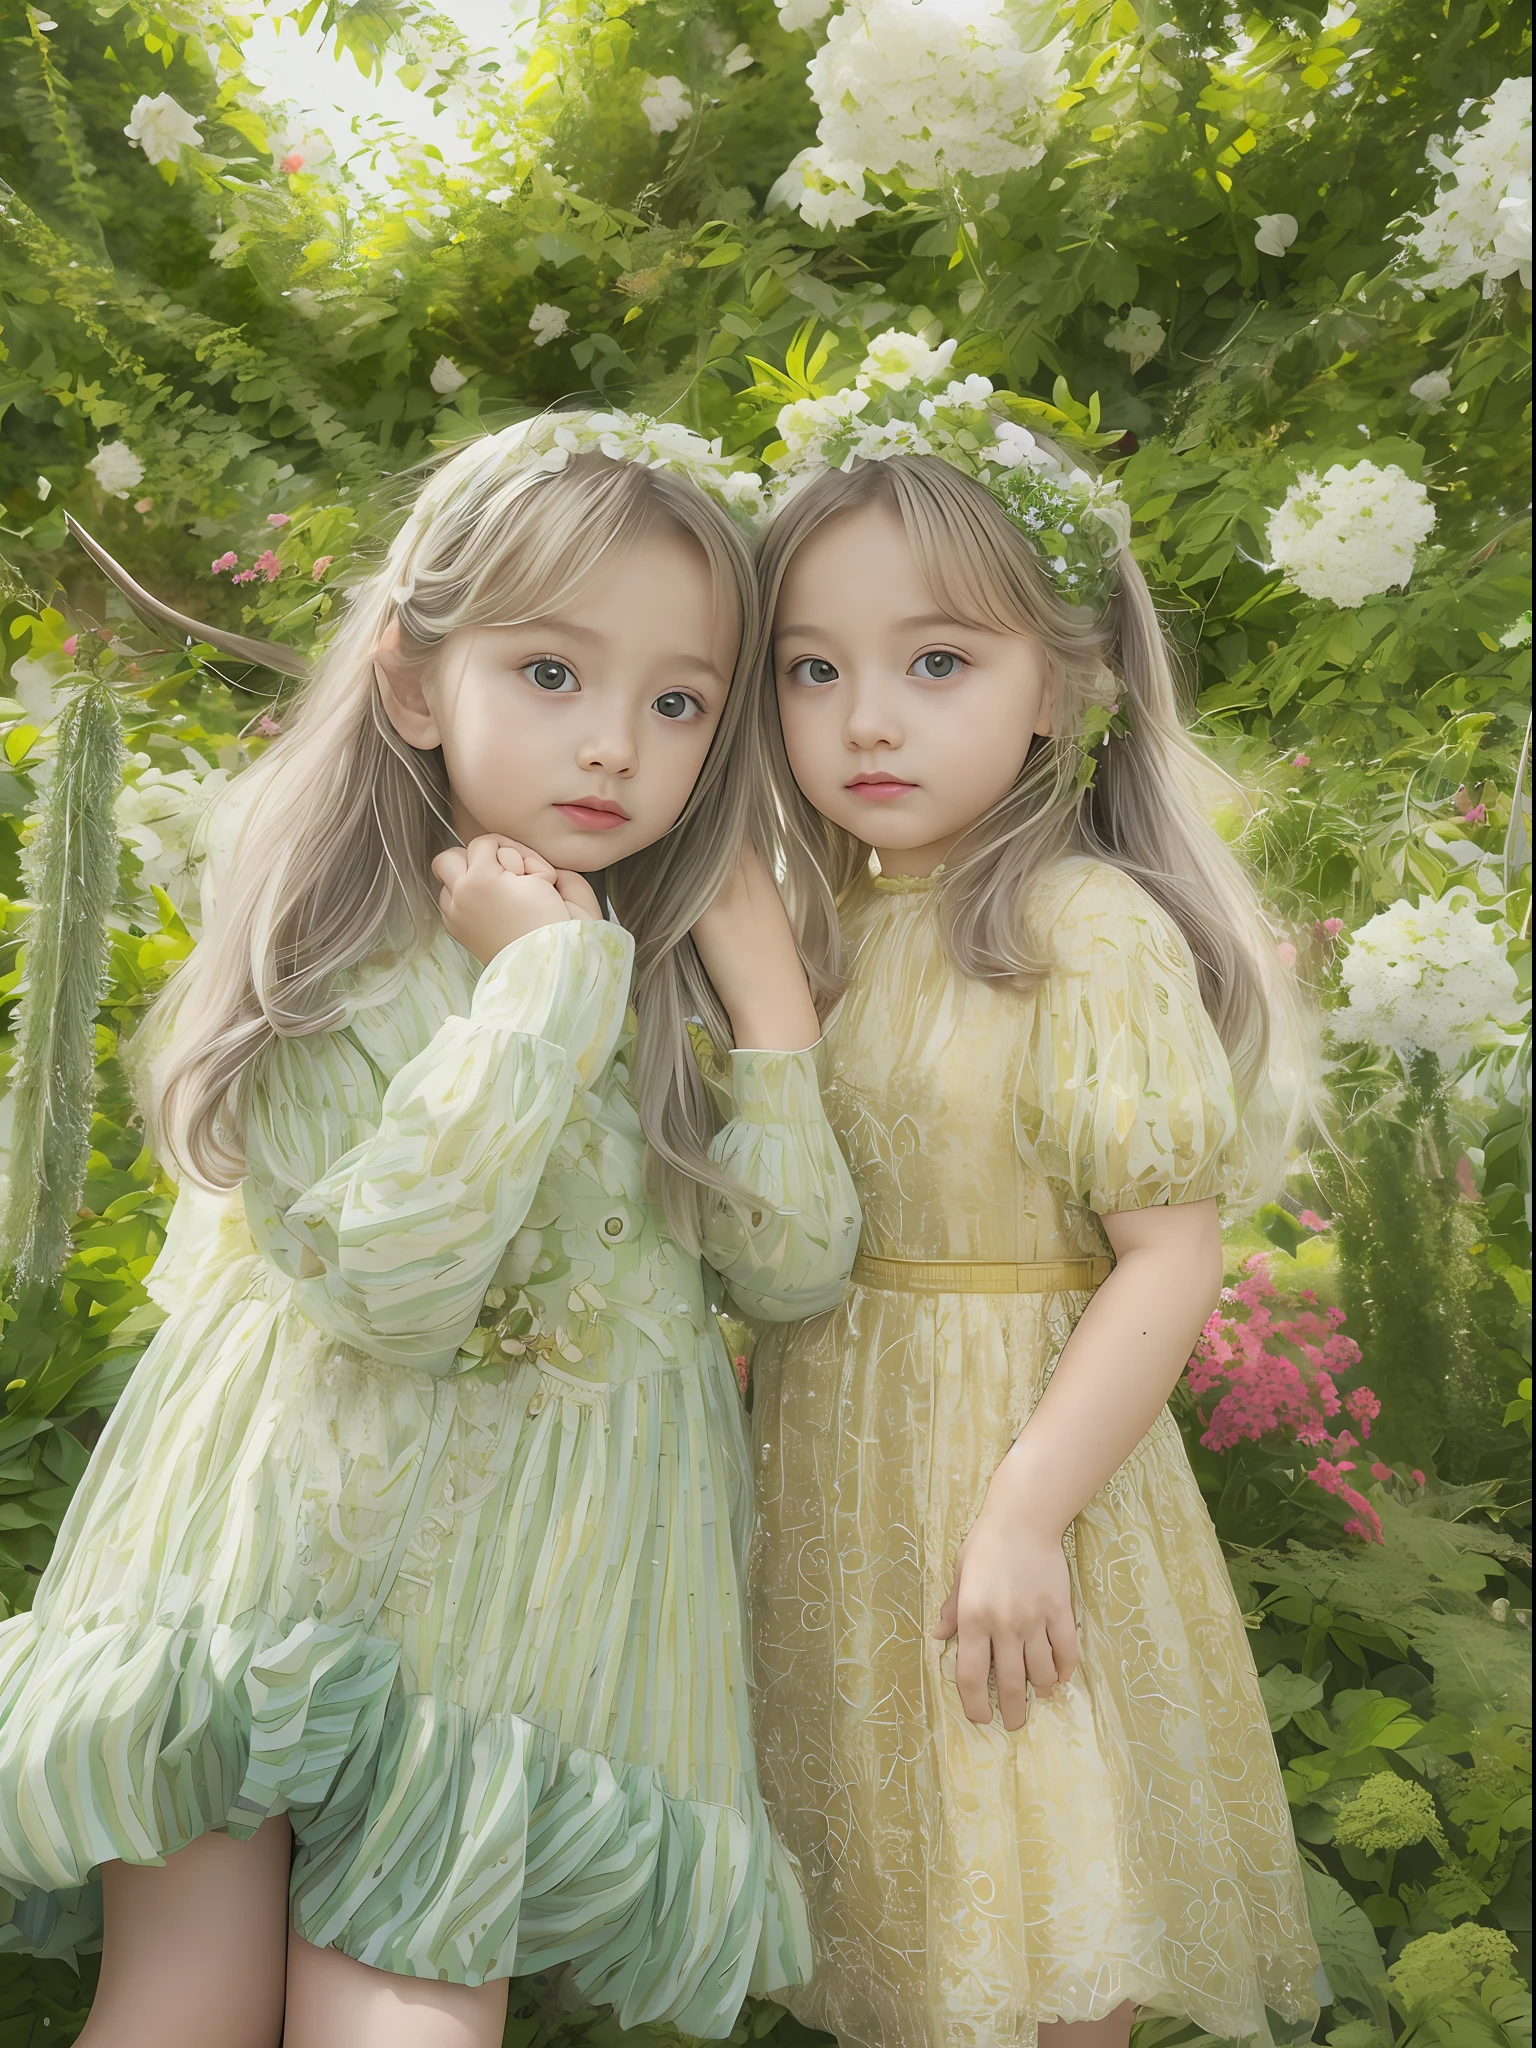 （8K 품질, 최고의 품질, 걸작），초고해상도，（극도로 현실적이다，사실적이며 현실적입니다.），귀여운 쌍둥이 아이들，살이에요，큰 눈，고운 피부，긴 머리카락，열대 정원，중간 샷